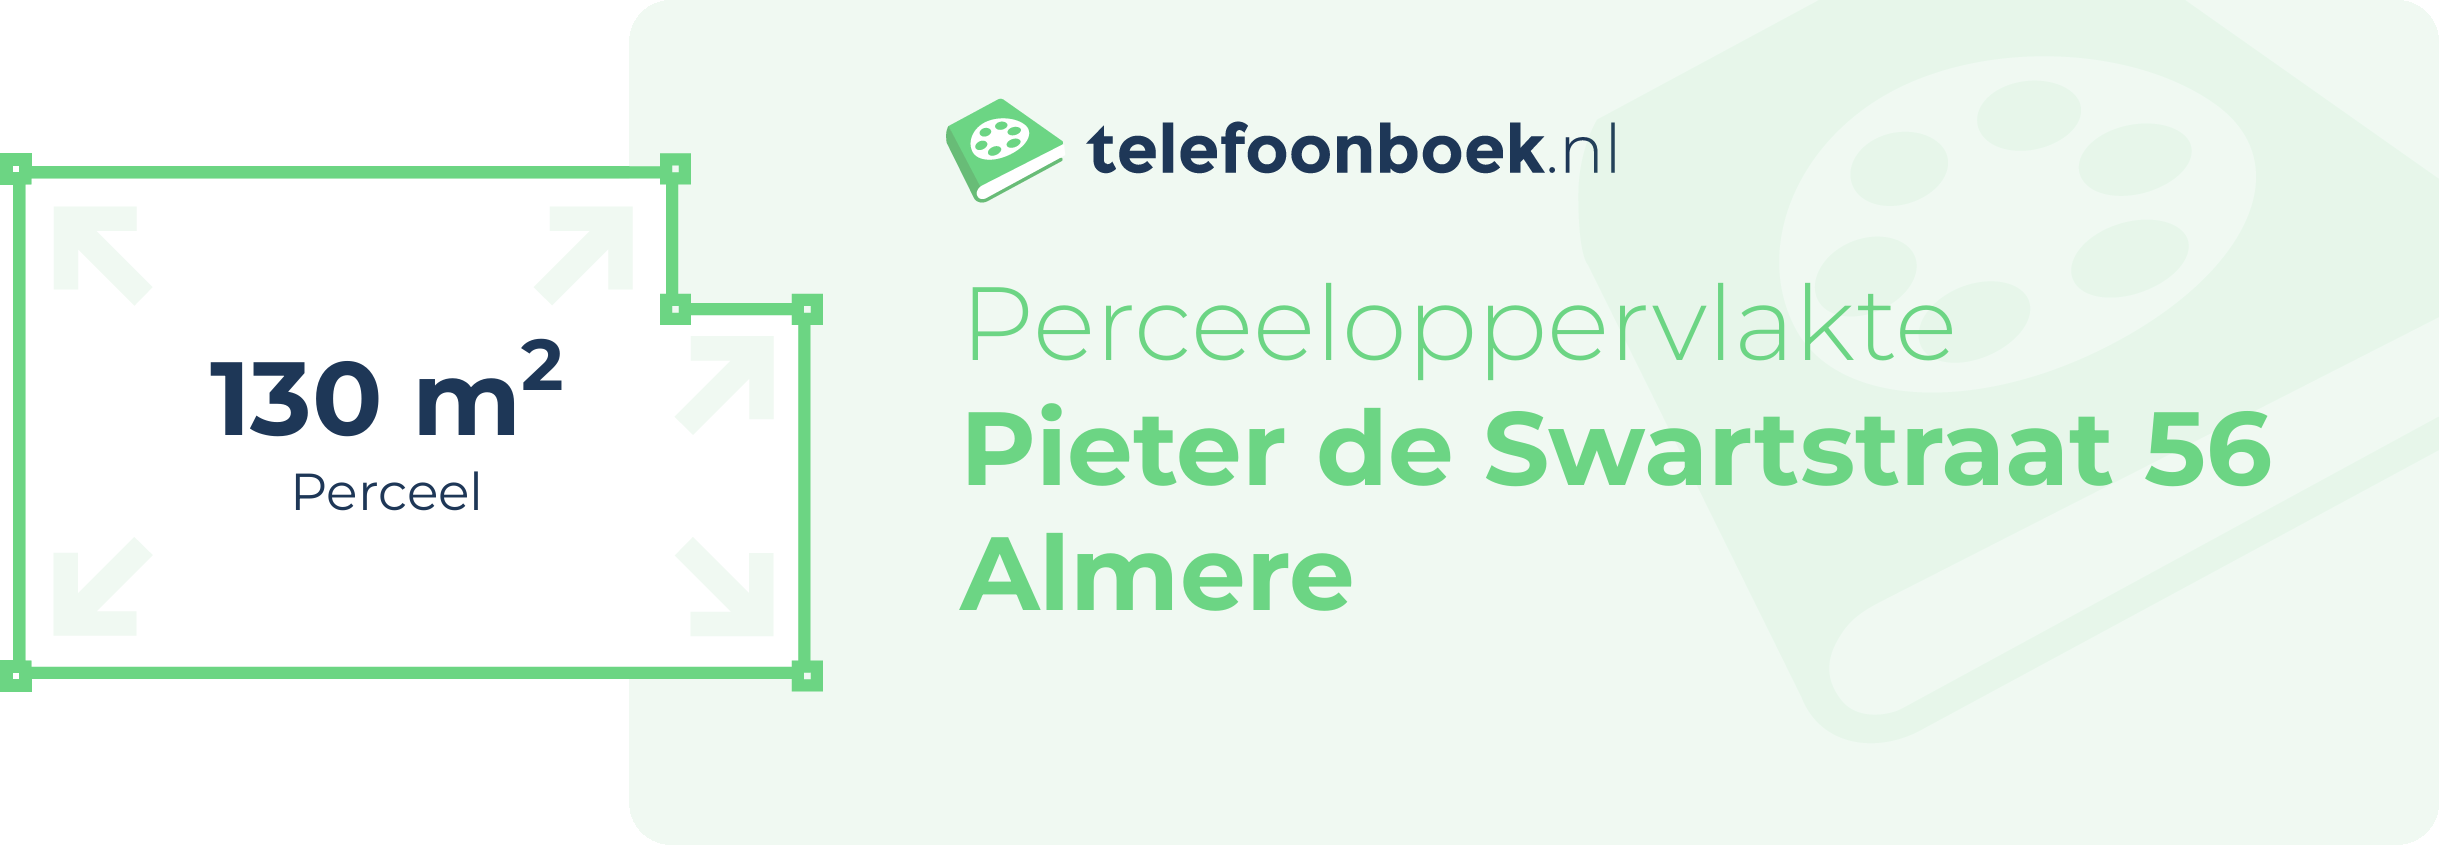 Perceeloppervlakte Pieter De Swartstraat 56 Almere